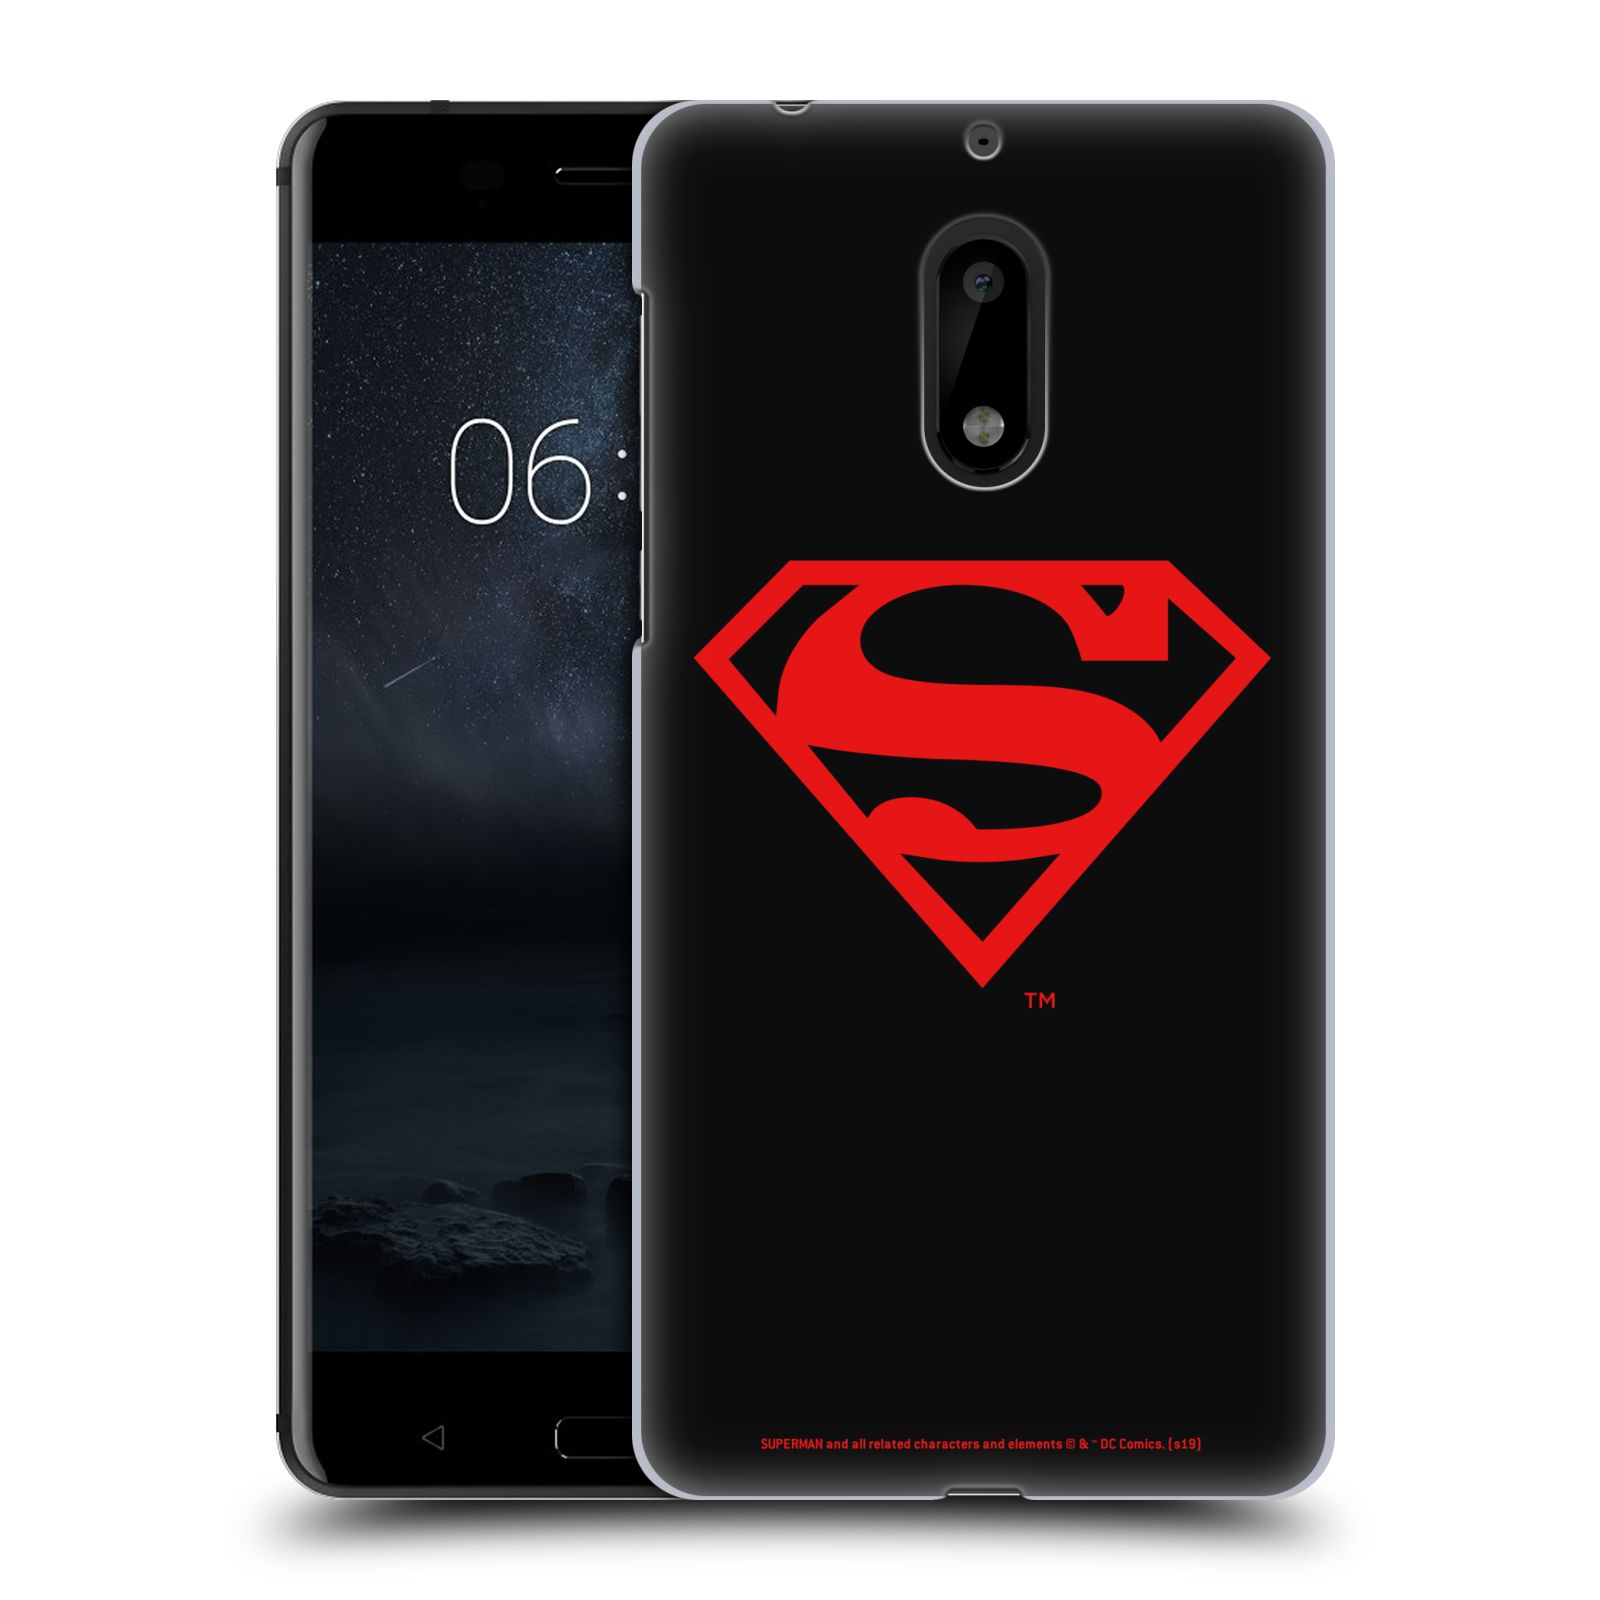 Pouzdro na mobil Nokia 6 - HEAD CASE - DC komix Superman červený znak černé pozadí